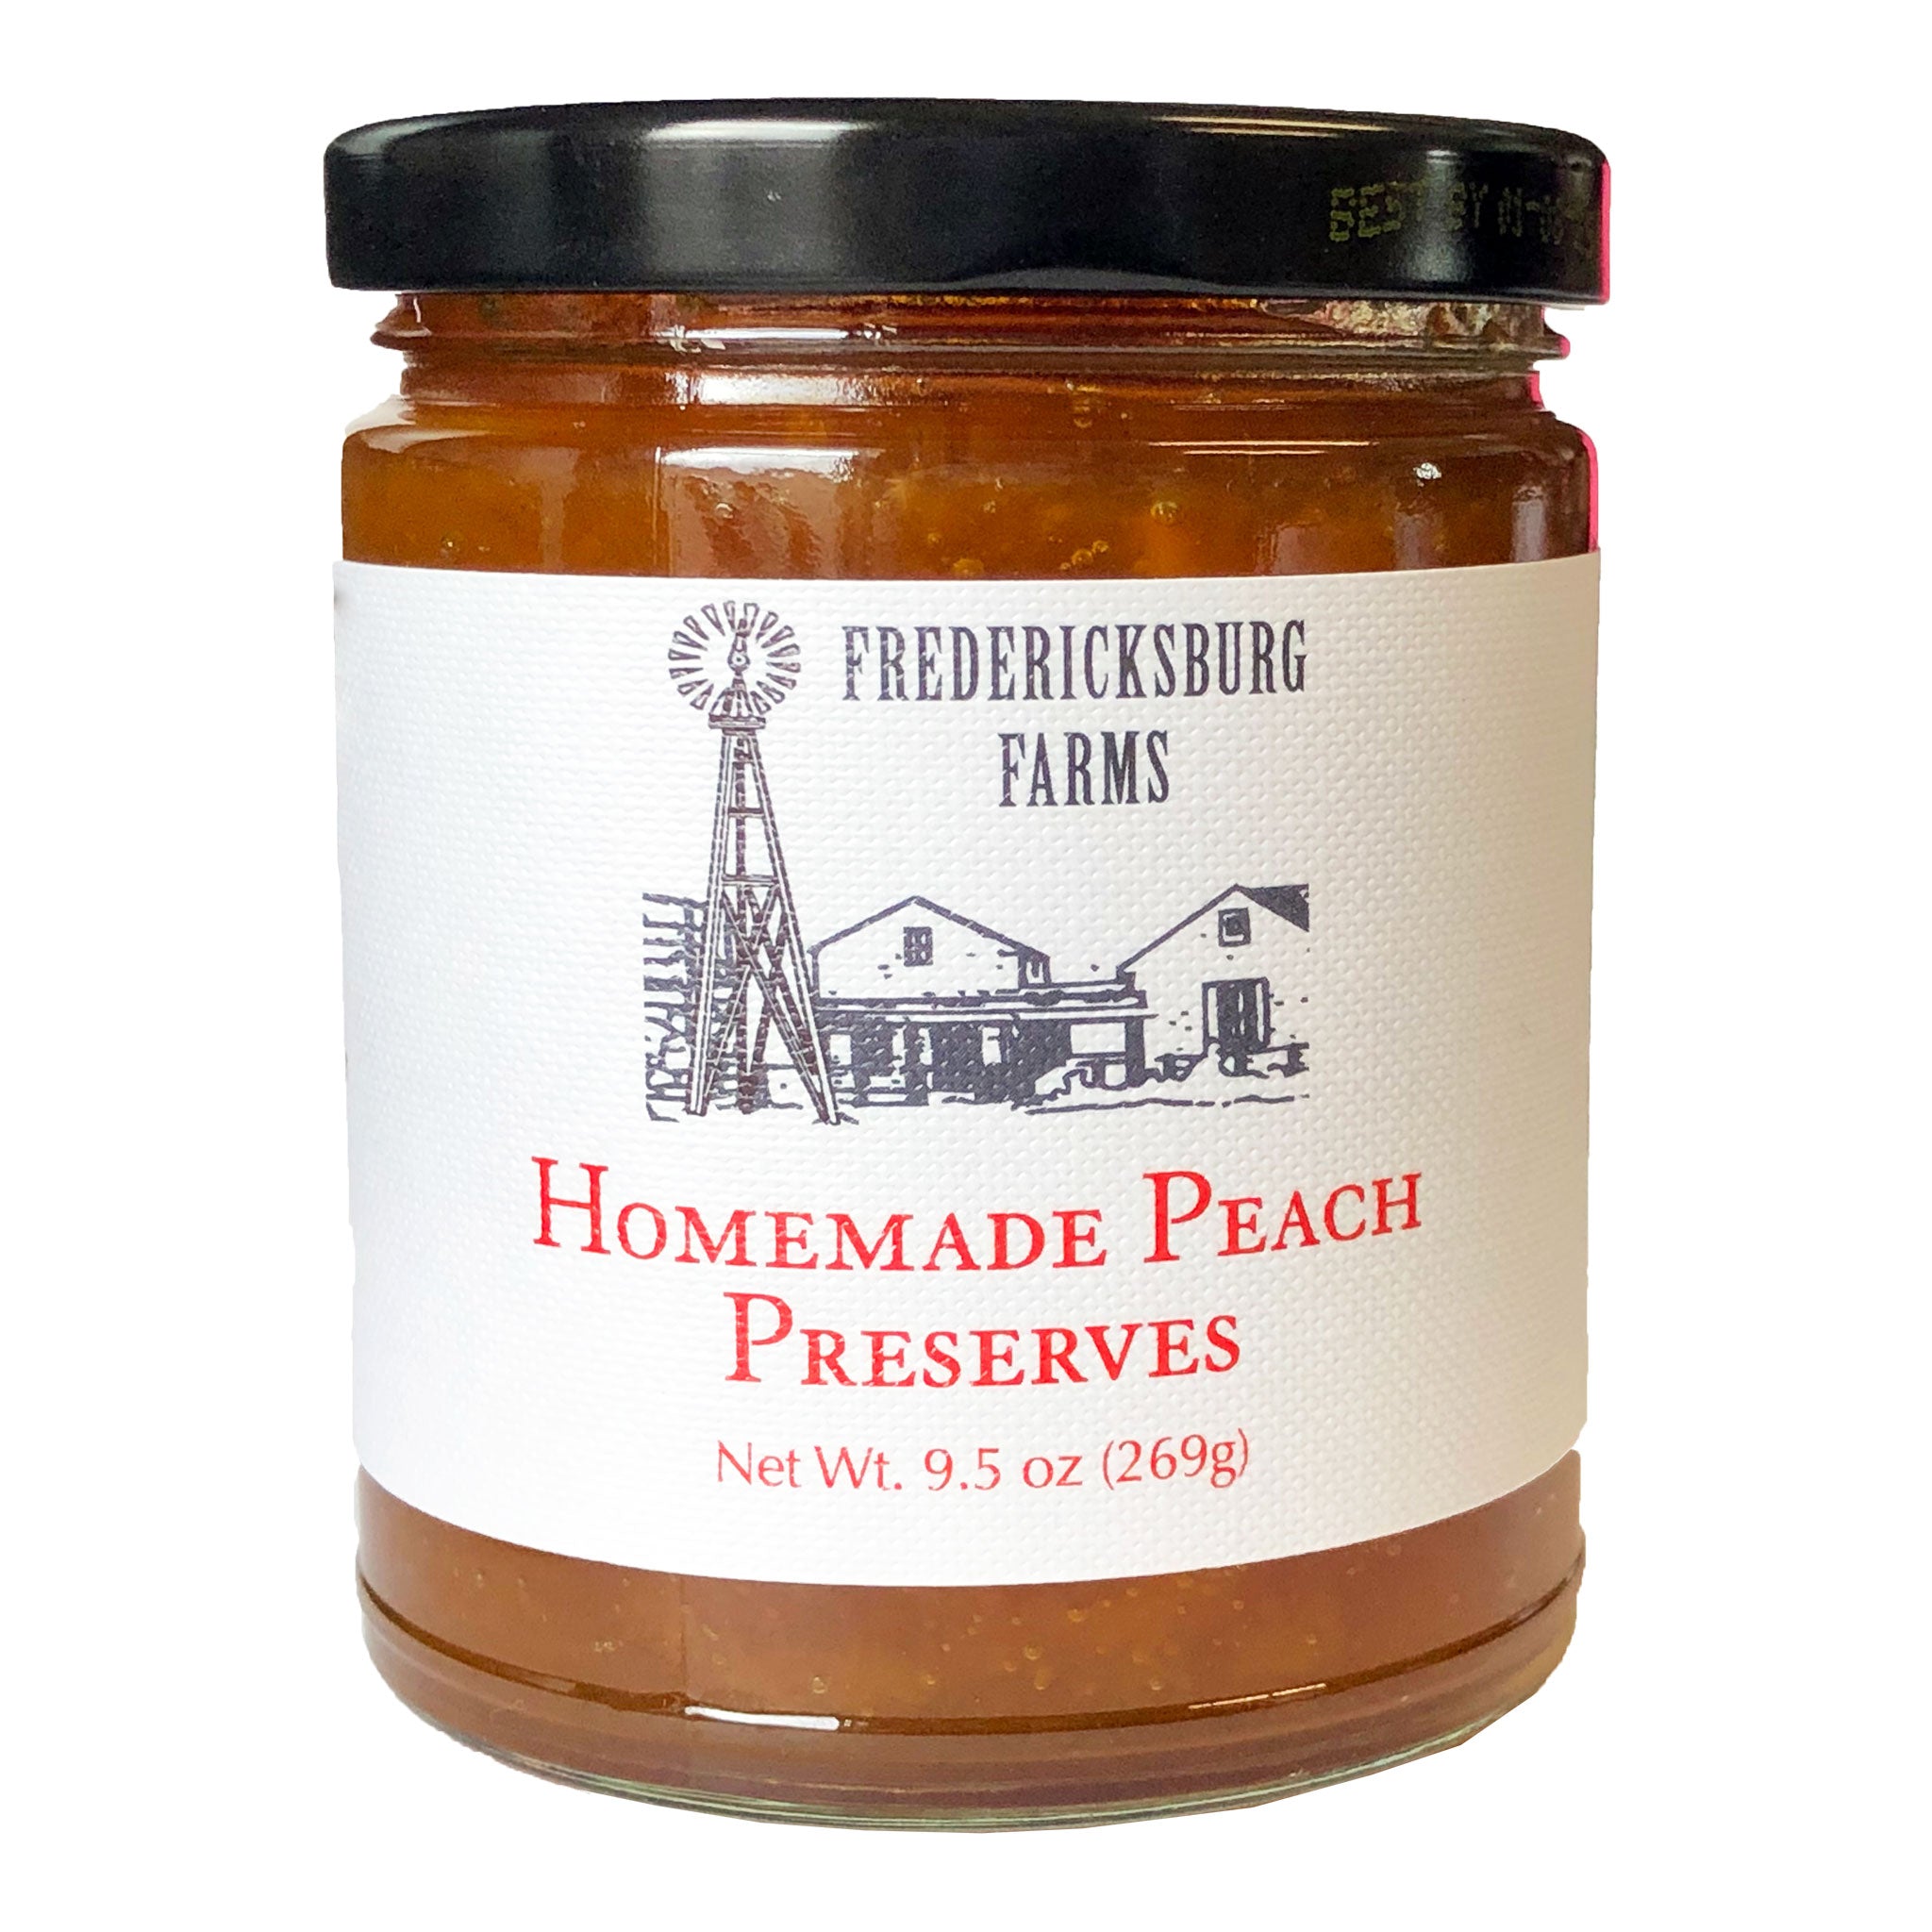 Homemade Peach Preserves - Fredericksburg Farms